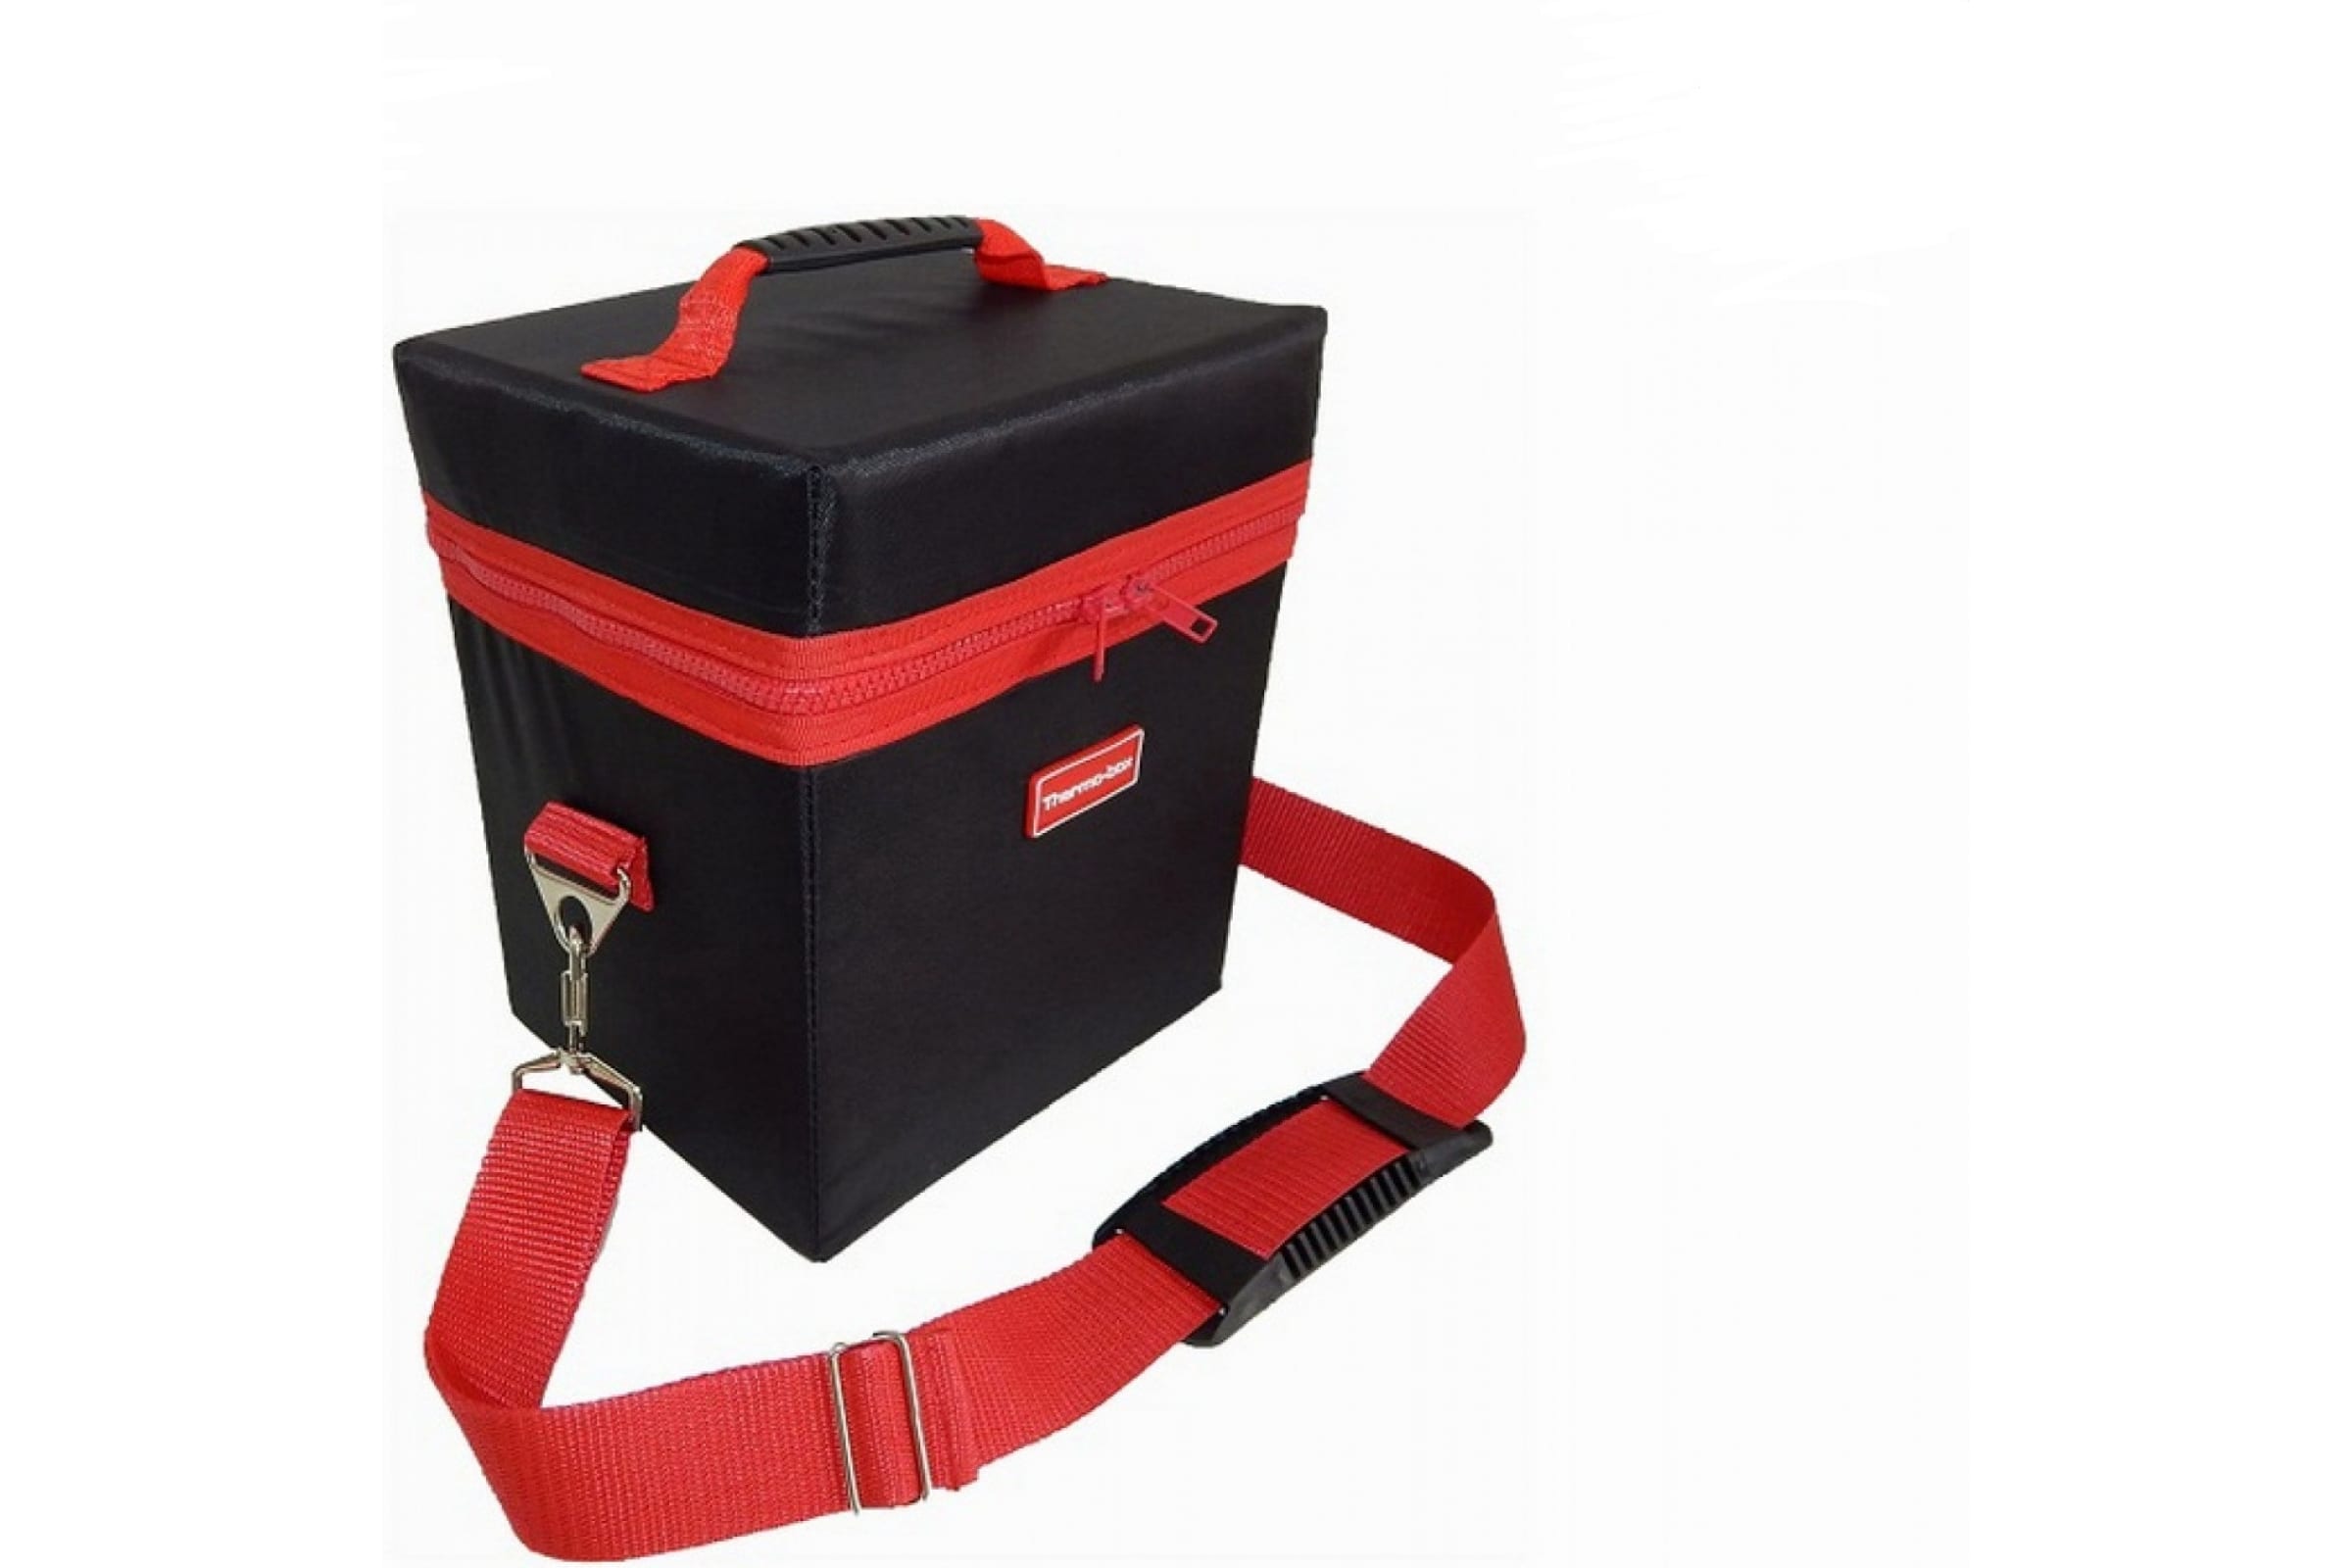 Термосумка Thermo-box (Термо-бокс). Размер М. Цвет: черный с красной окантовкой.